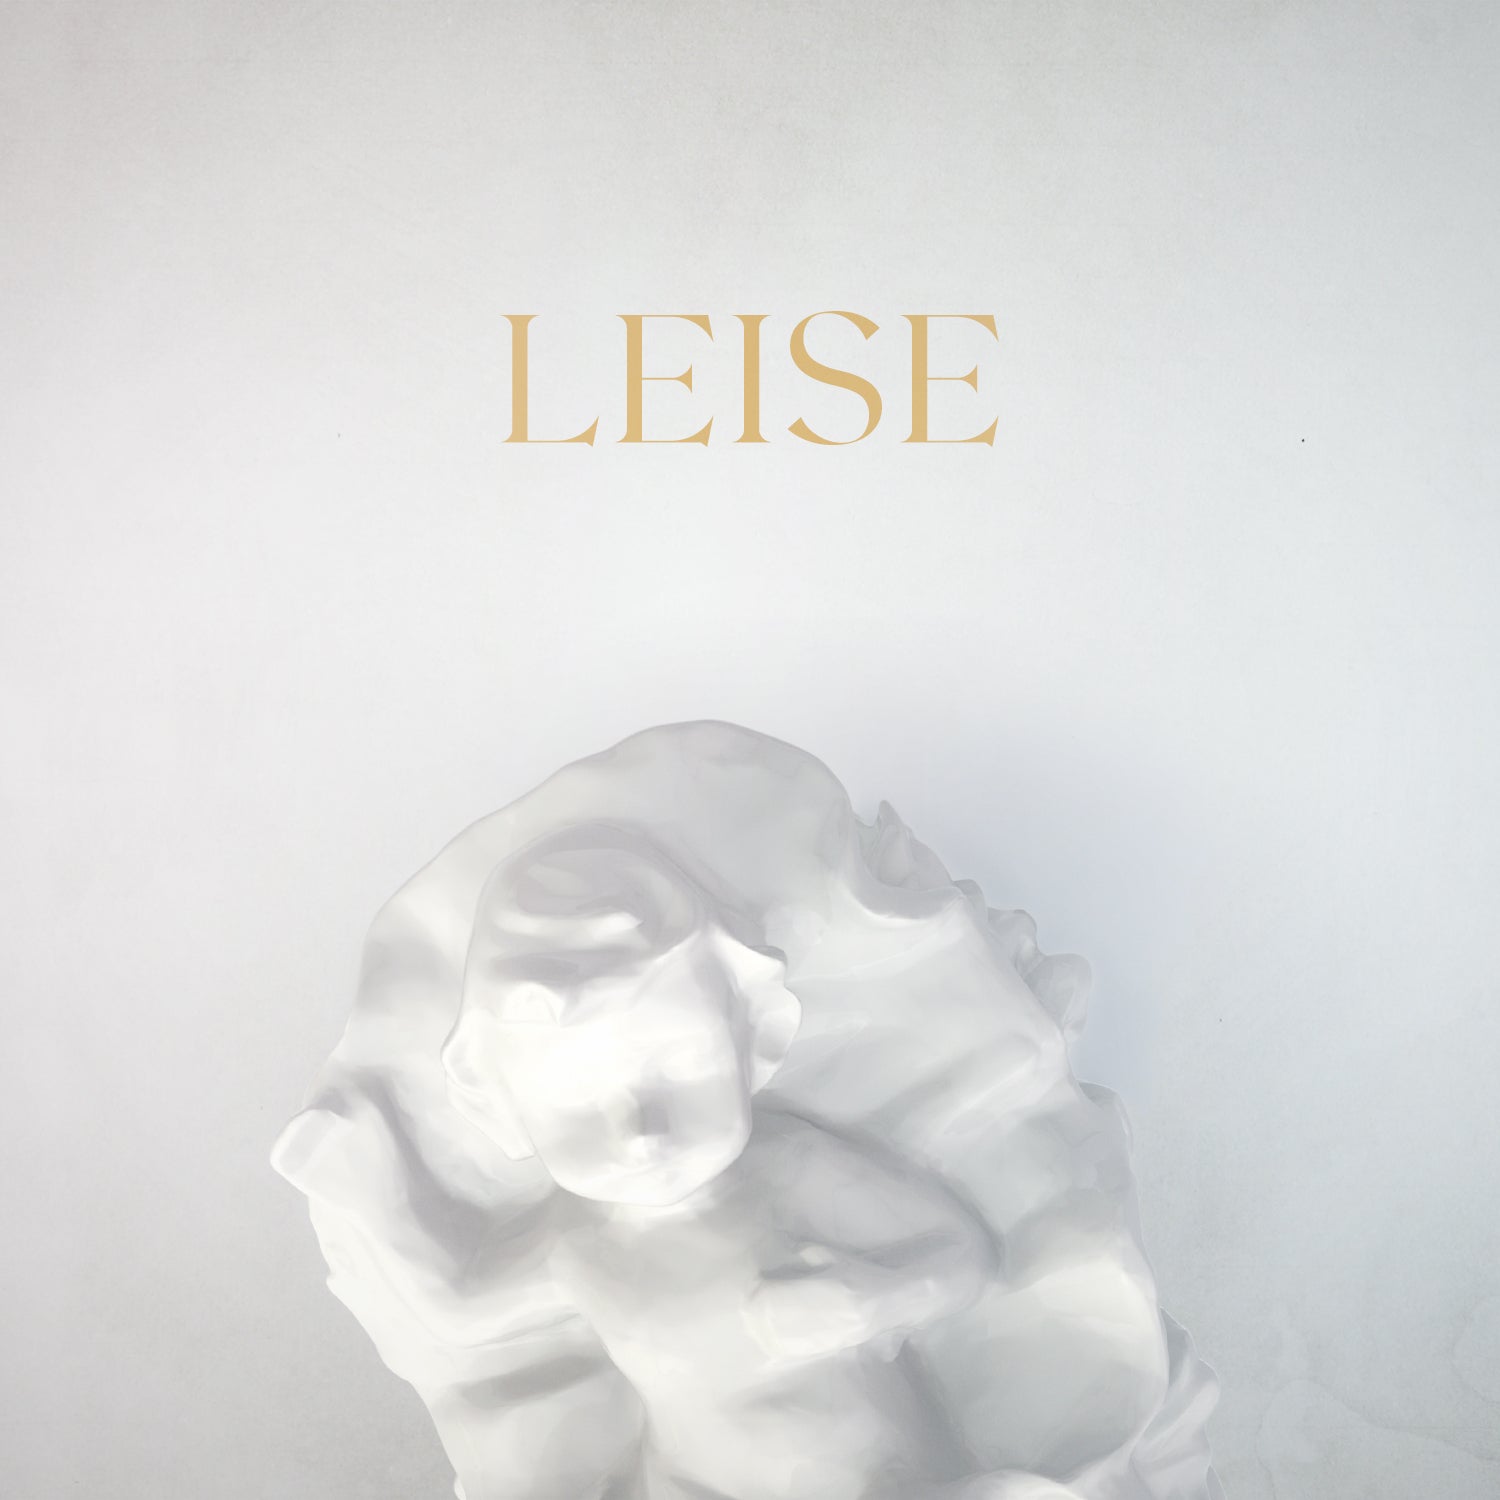 Leise (Text)